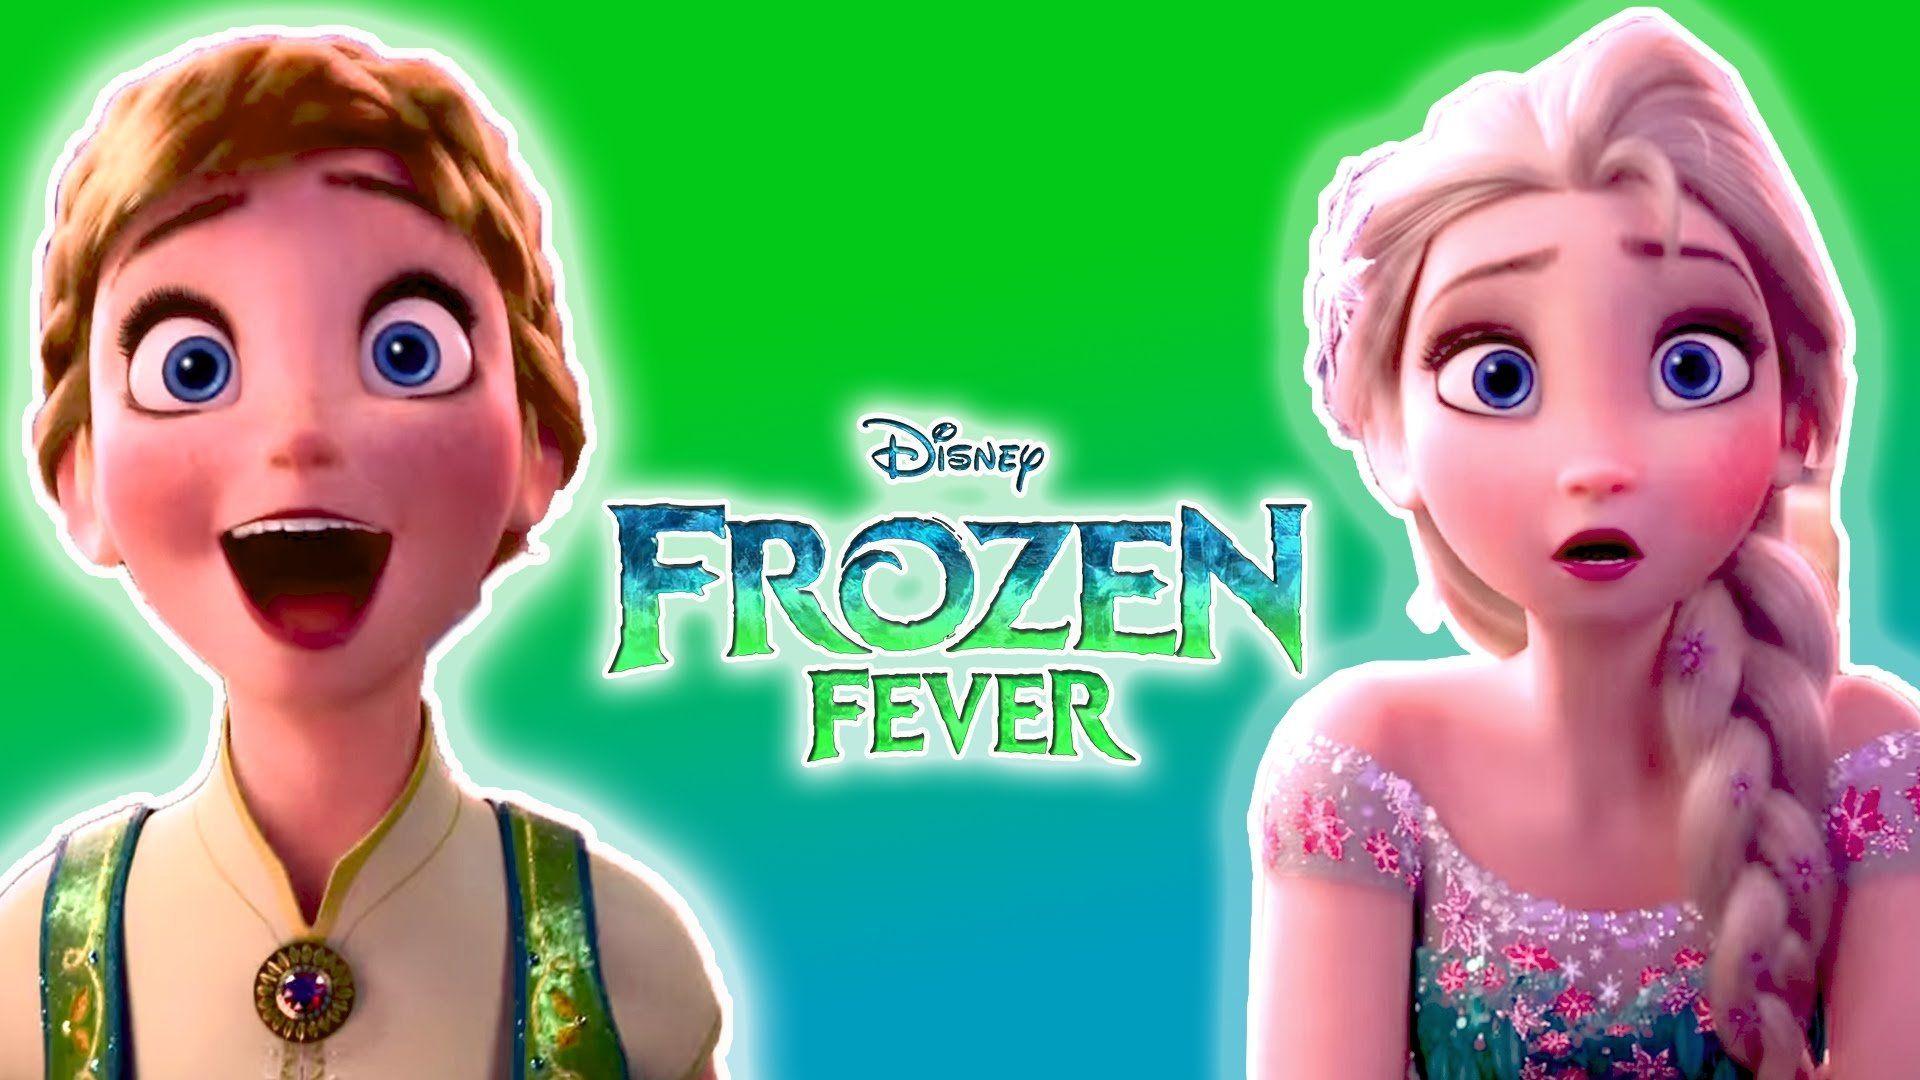 frozen fever full movie online free